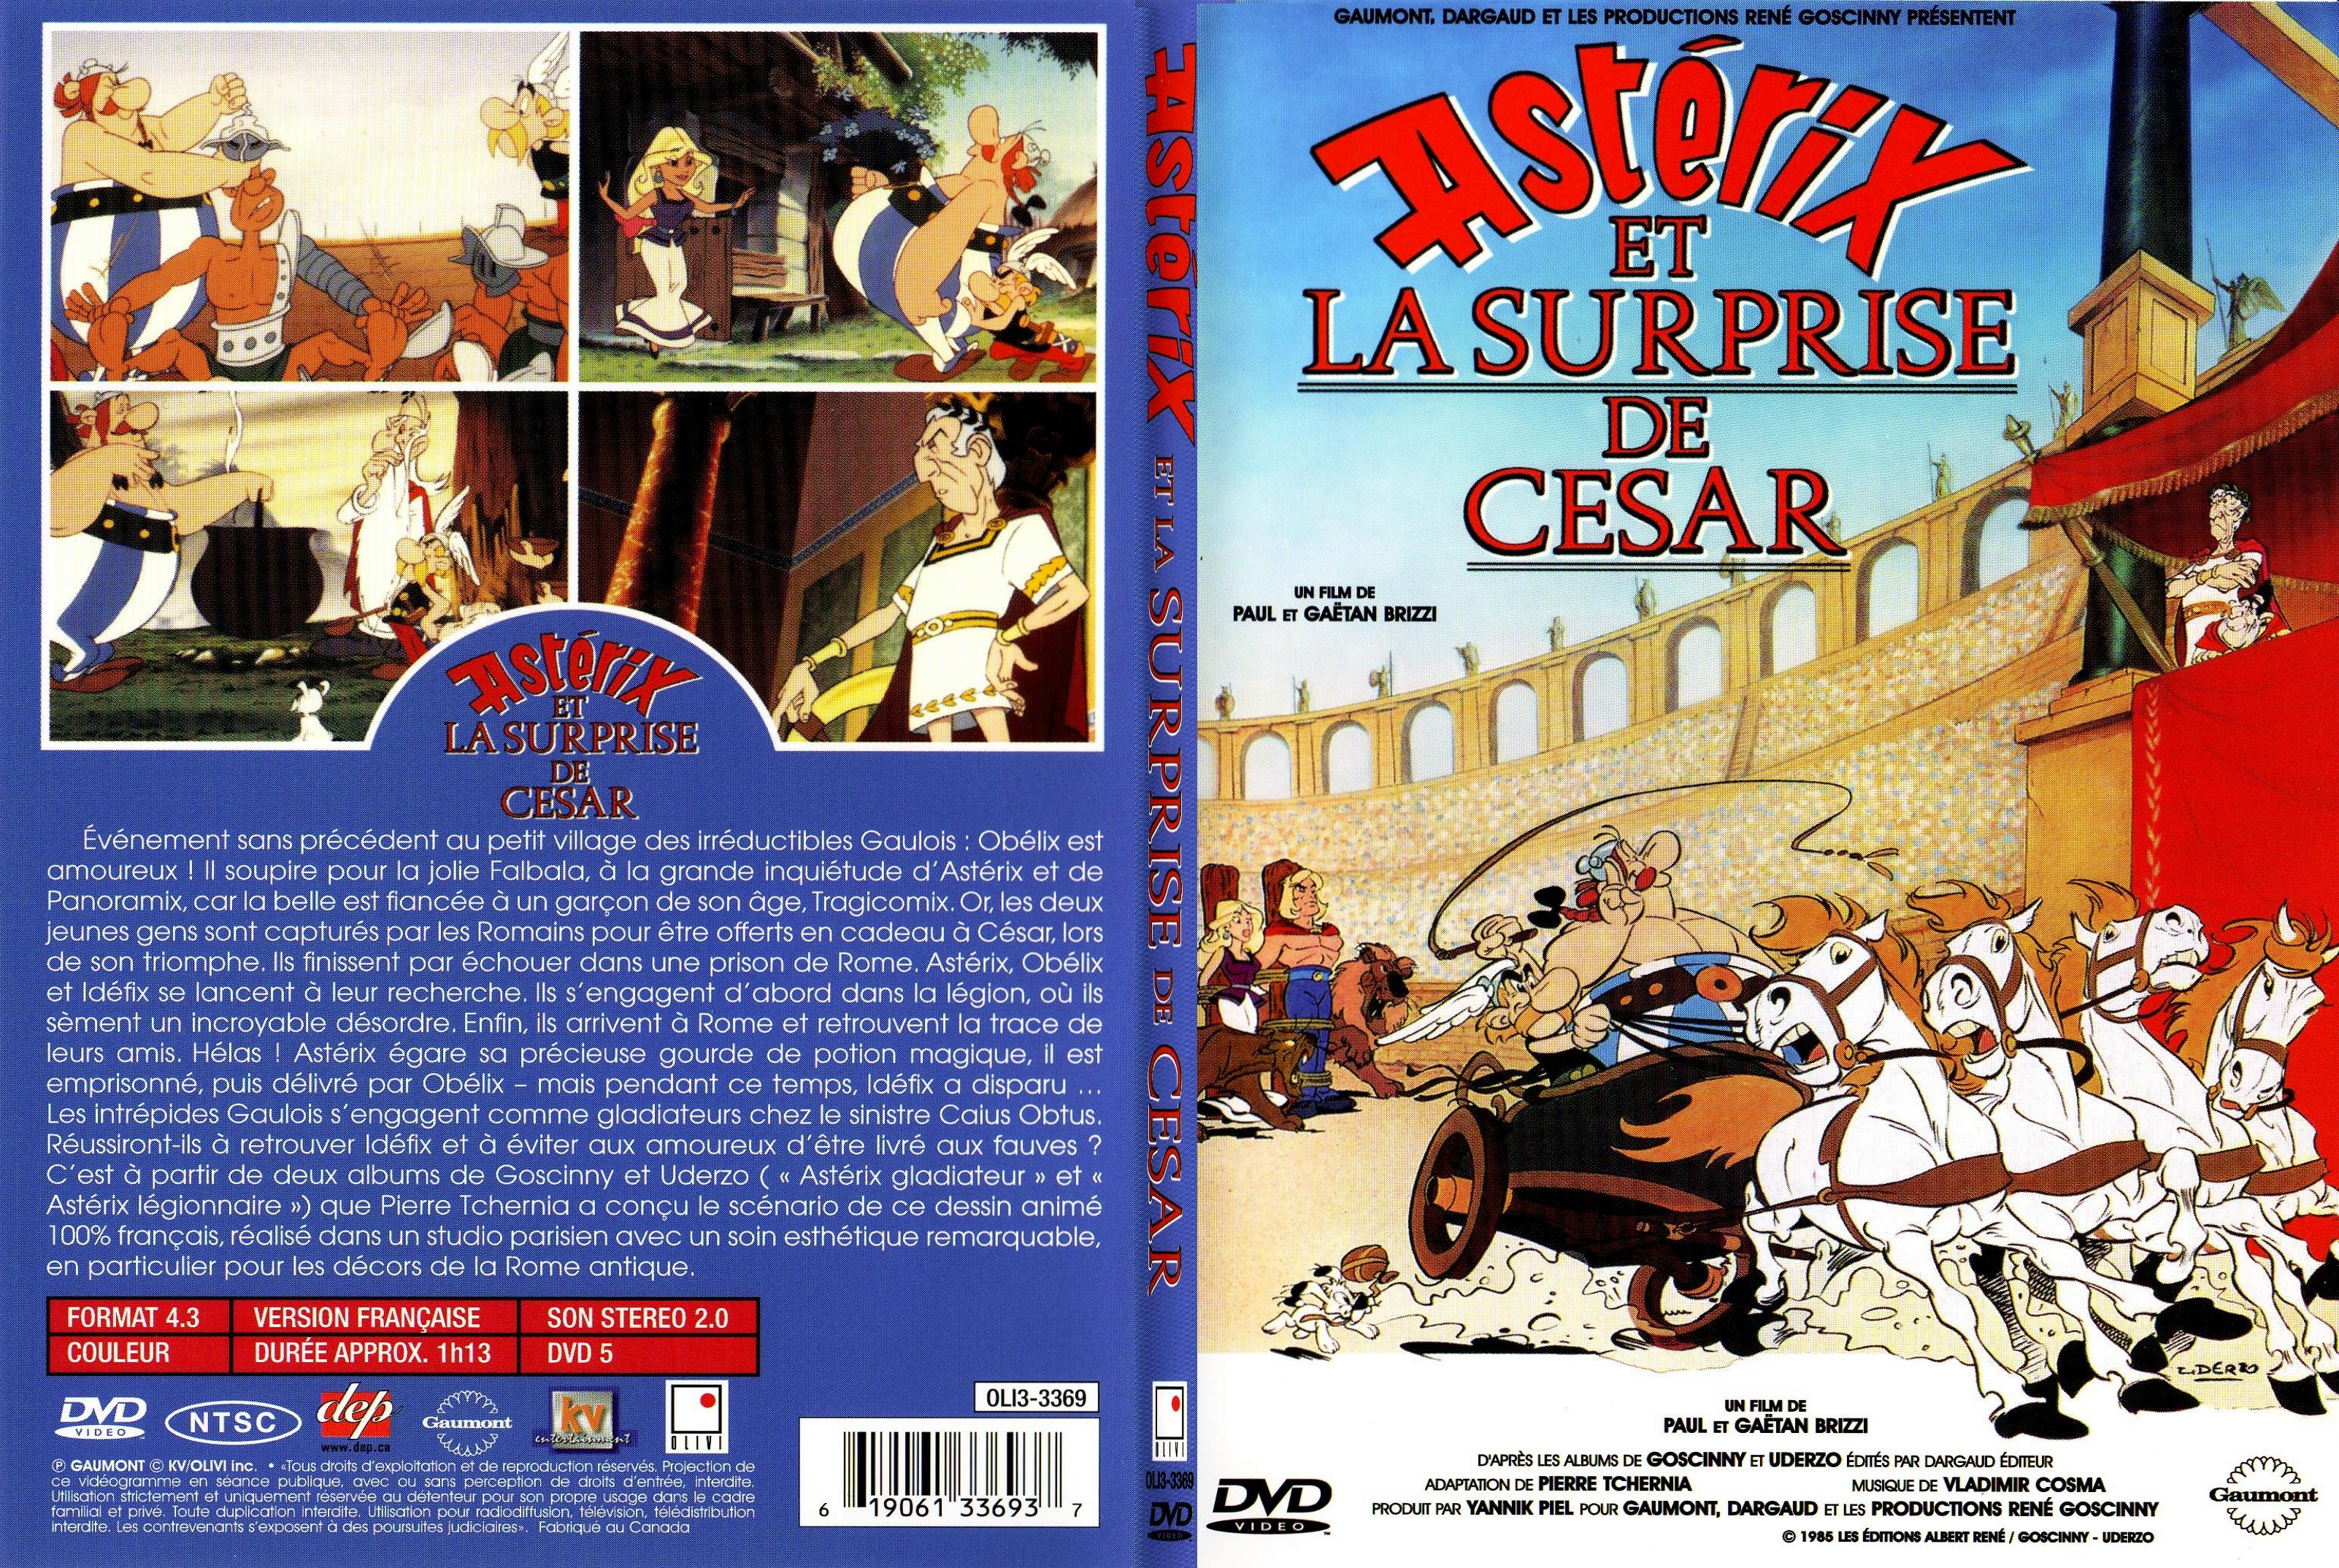 Jaquette DVD Asterix et la surprise de Cesar - SLIM